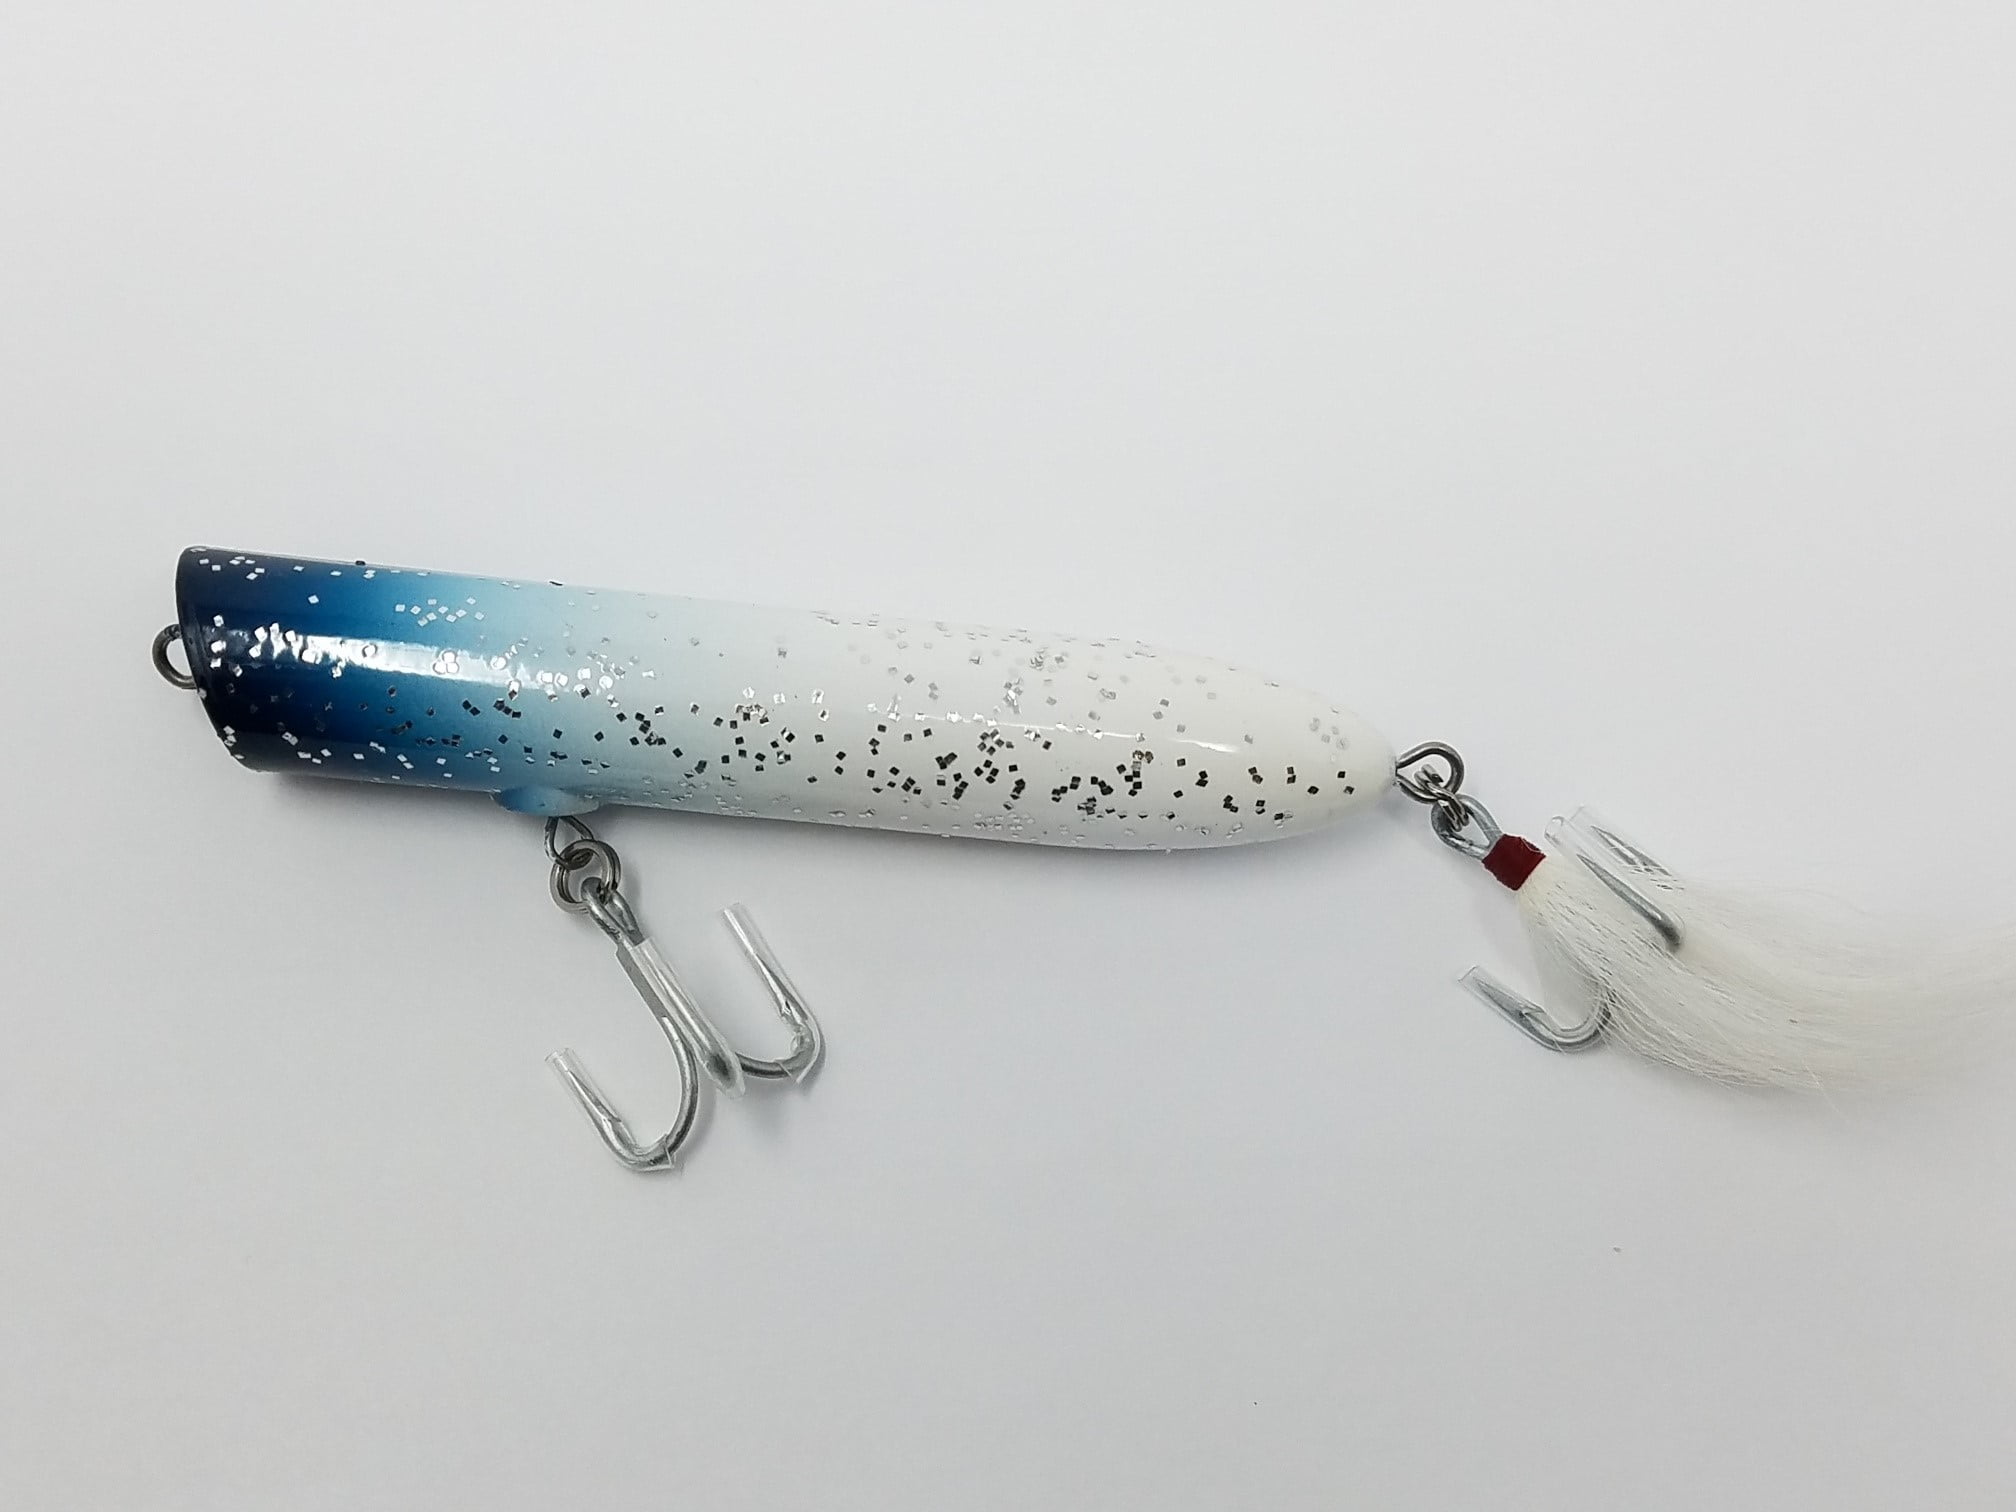 Atom Freshwater 3 oz, Striper Swiper, Top Water Popper Hard Bait Fishing  Lure, Blue/silver